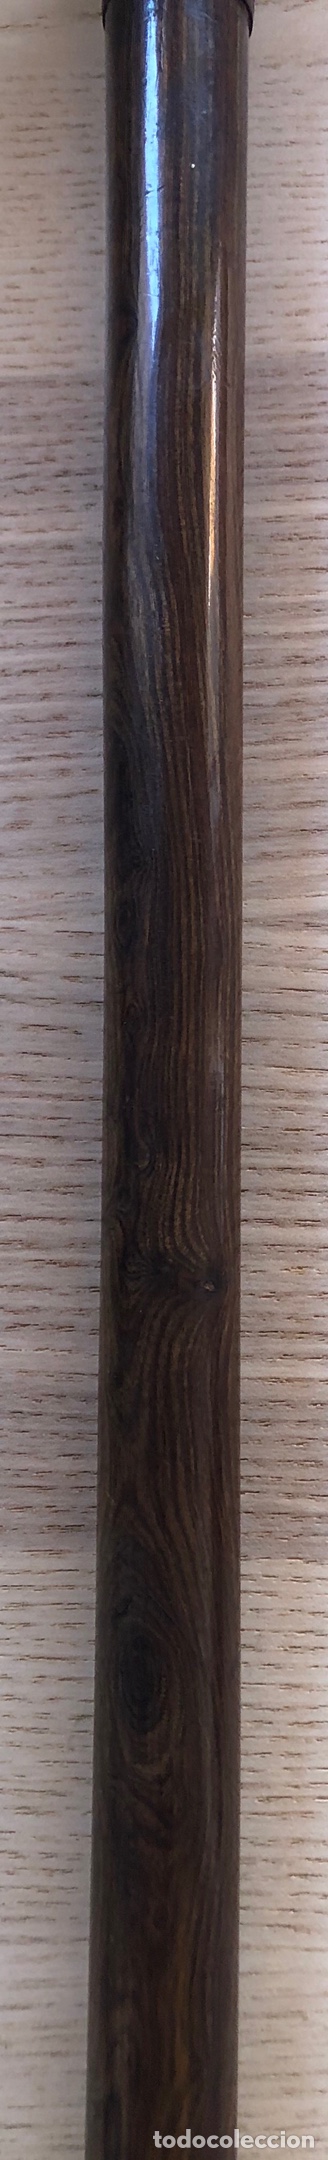 Antigüedades: Antigua Baston, con empuñadura en hierro, y vara de madera noble. Pps. S.XX. - Foto 7 - 213470000